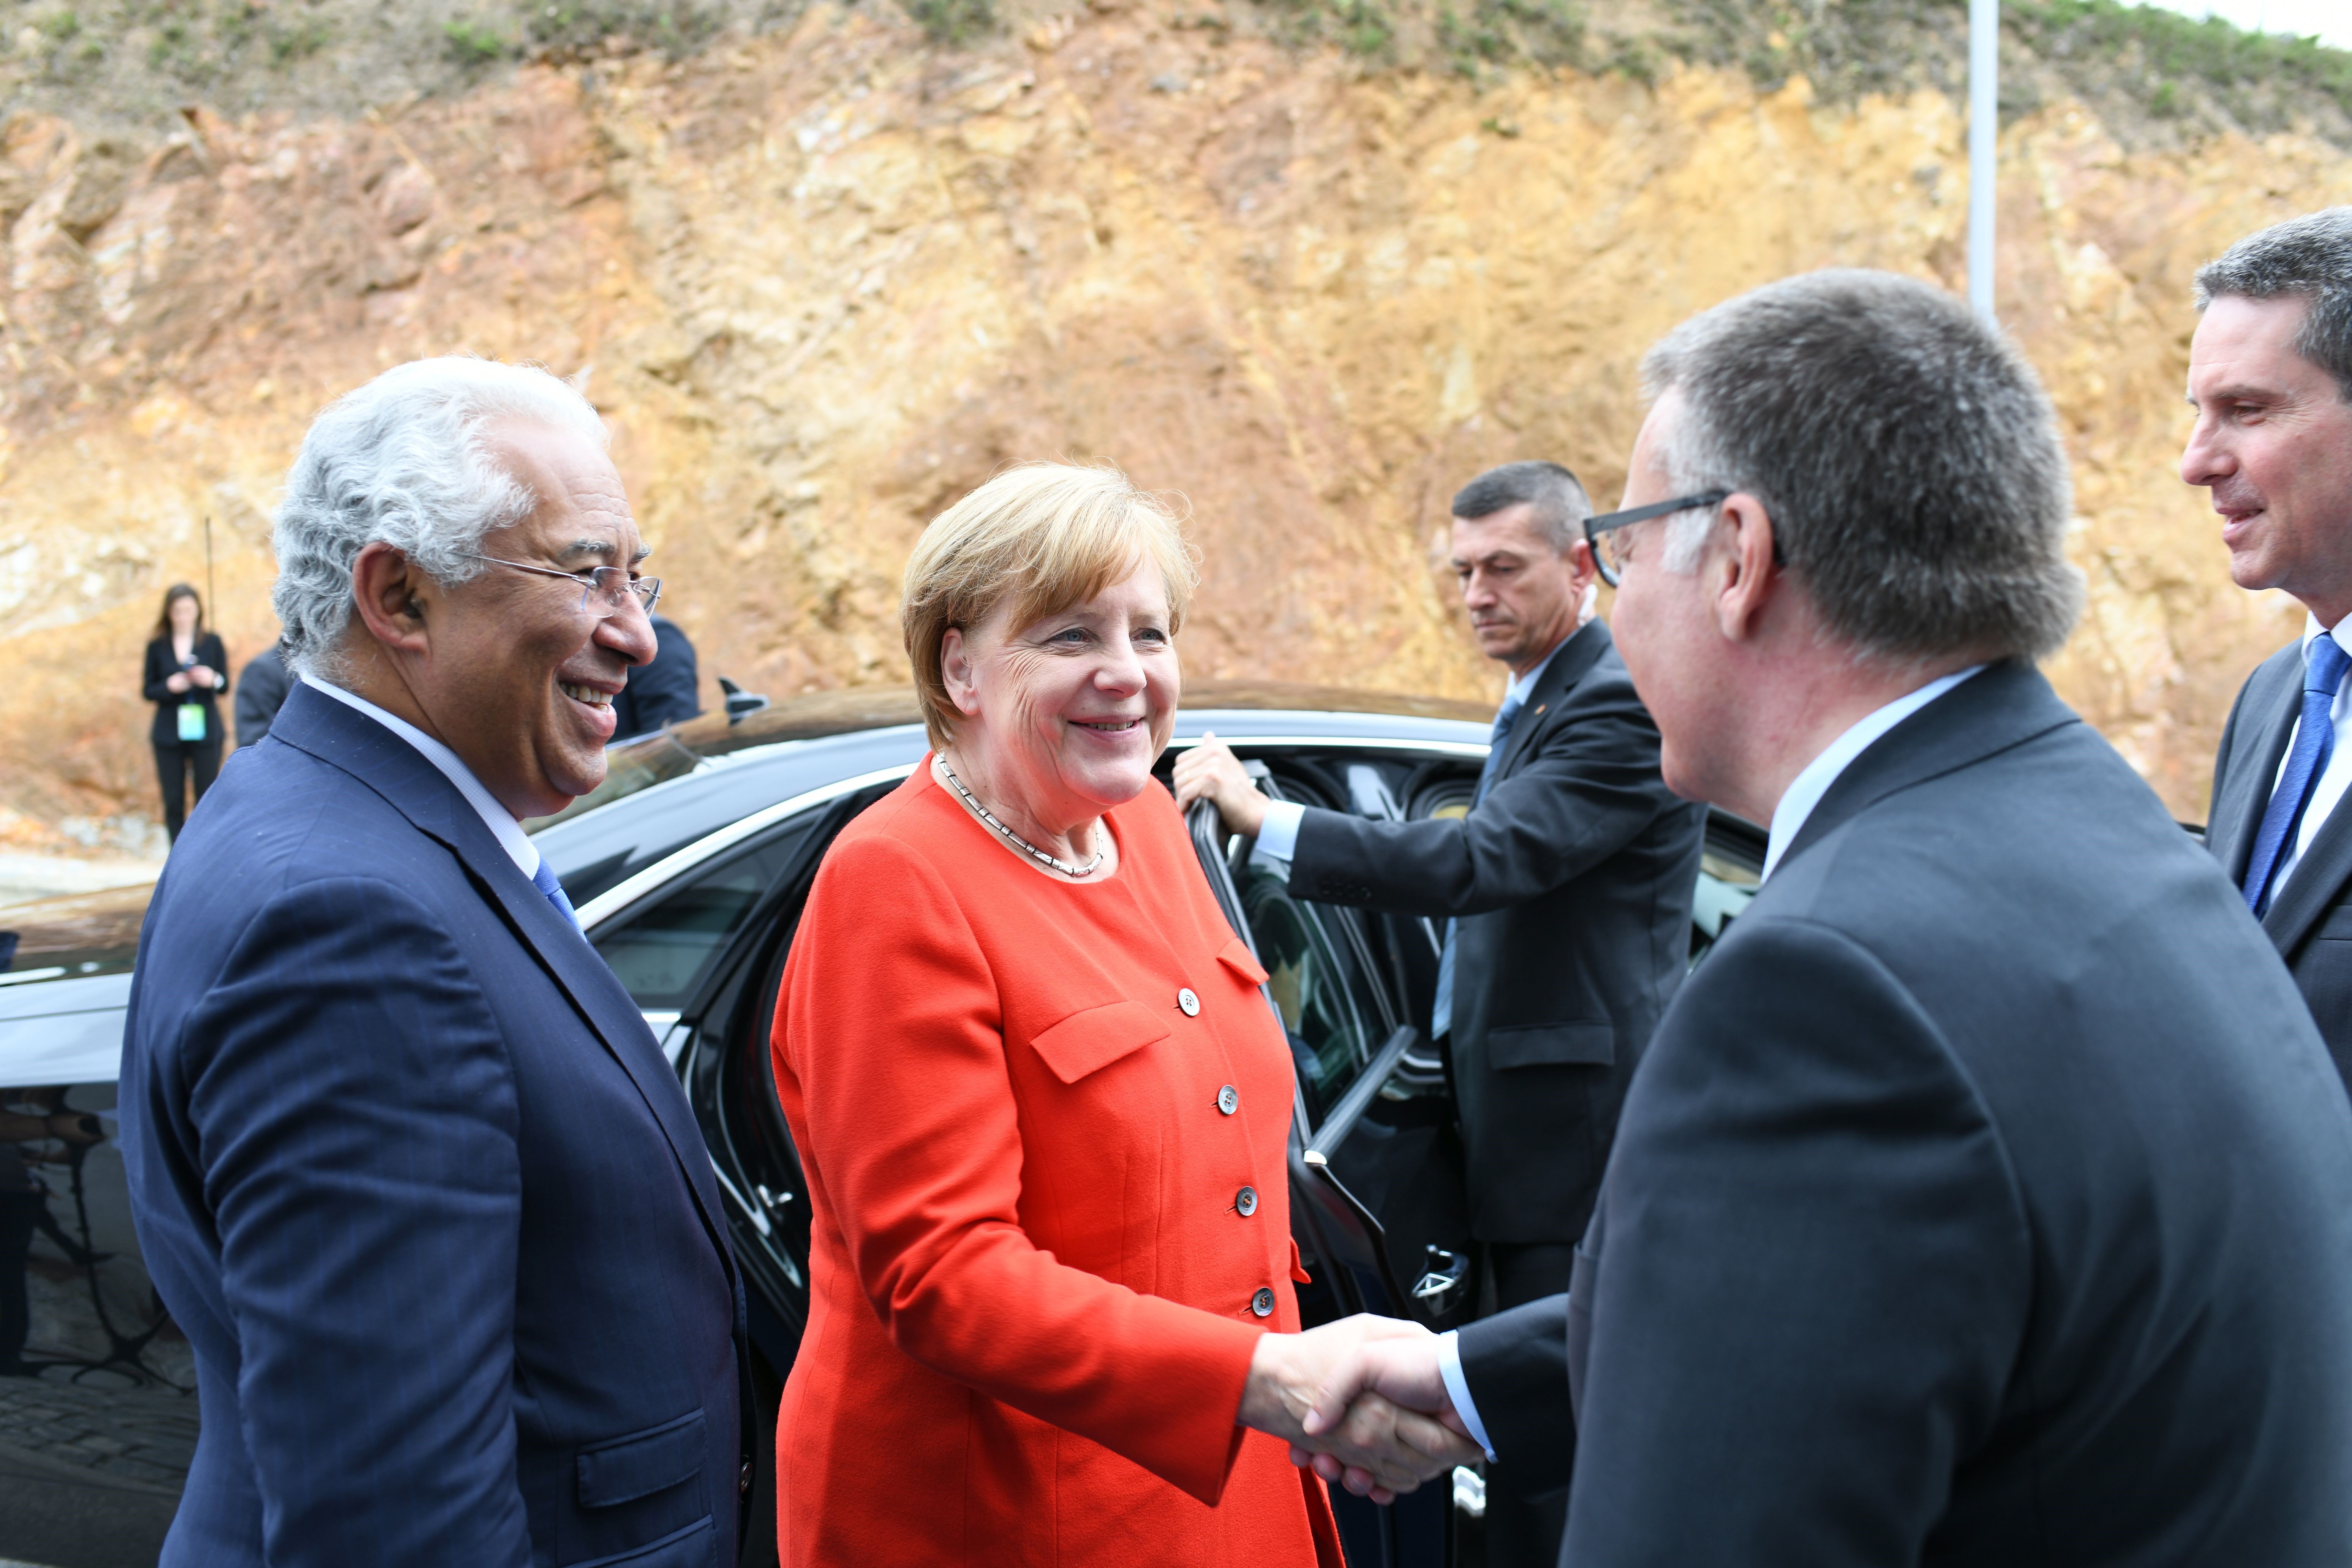 Politikprominenz bei Bosch: Bundeskanzlerin Merkel und Premier Costa eröffnen Tech Center in Portugal